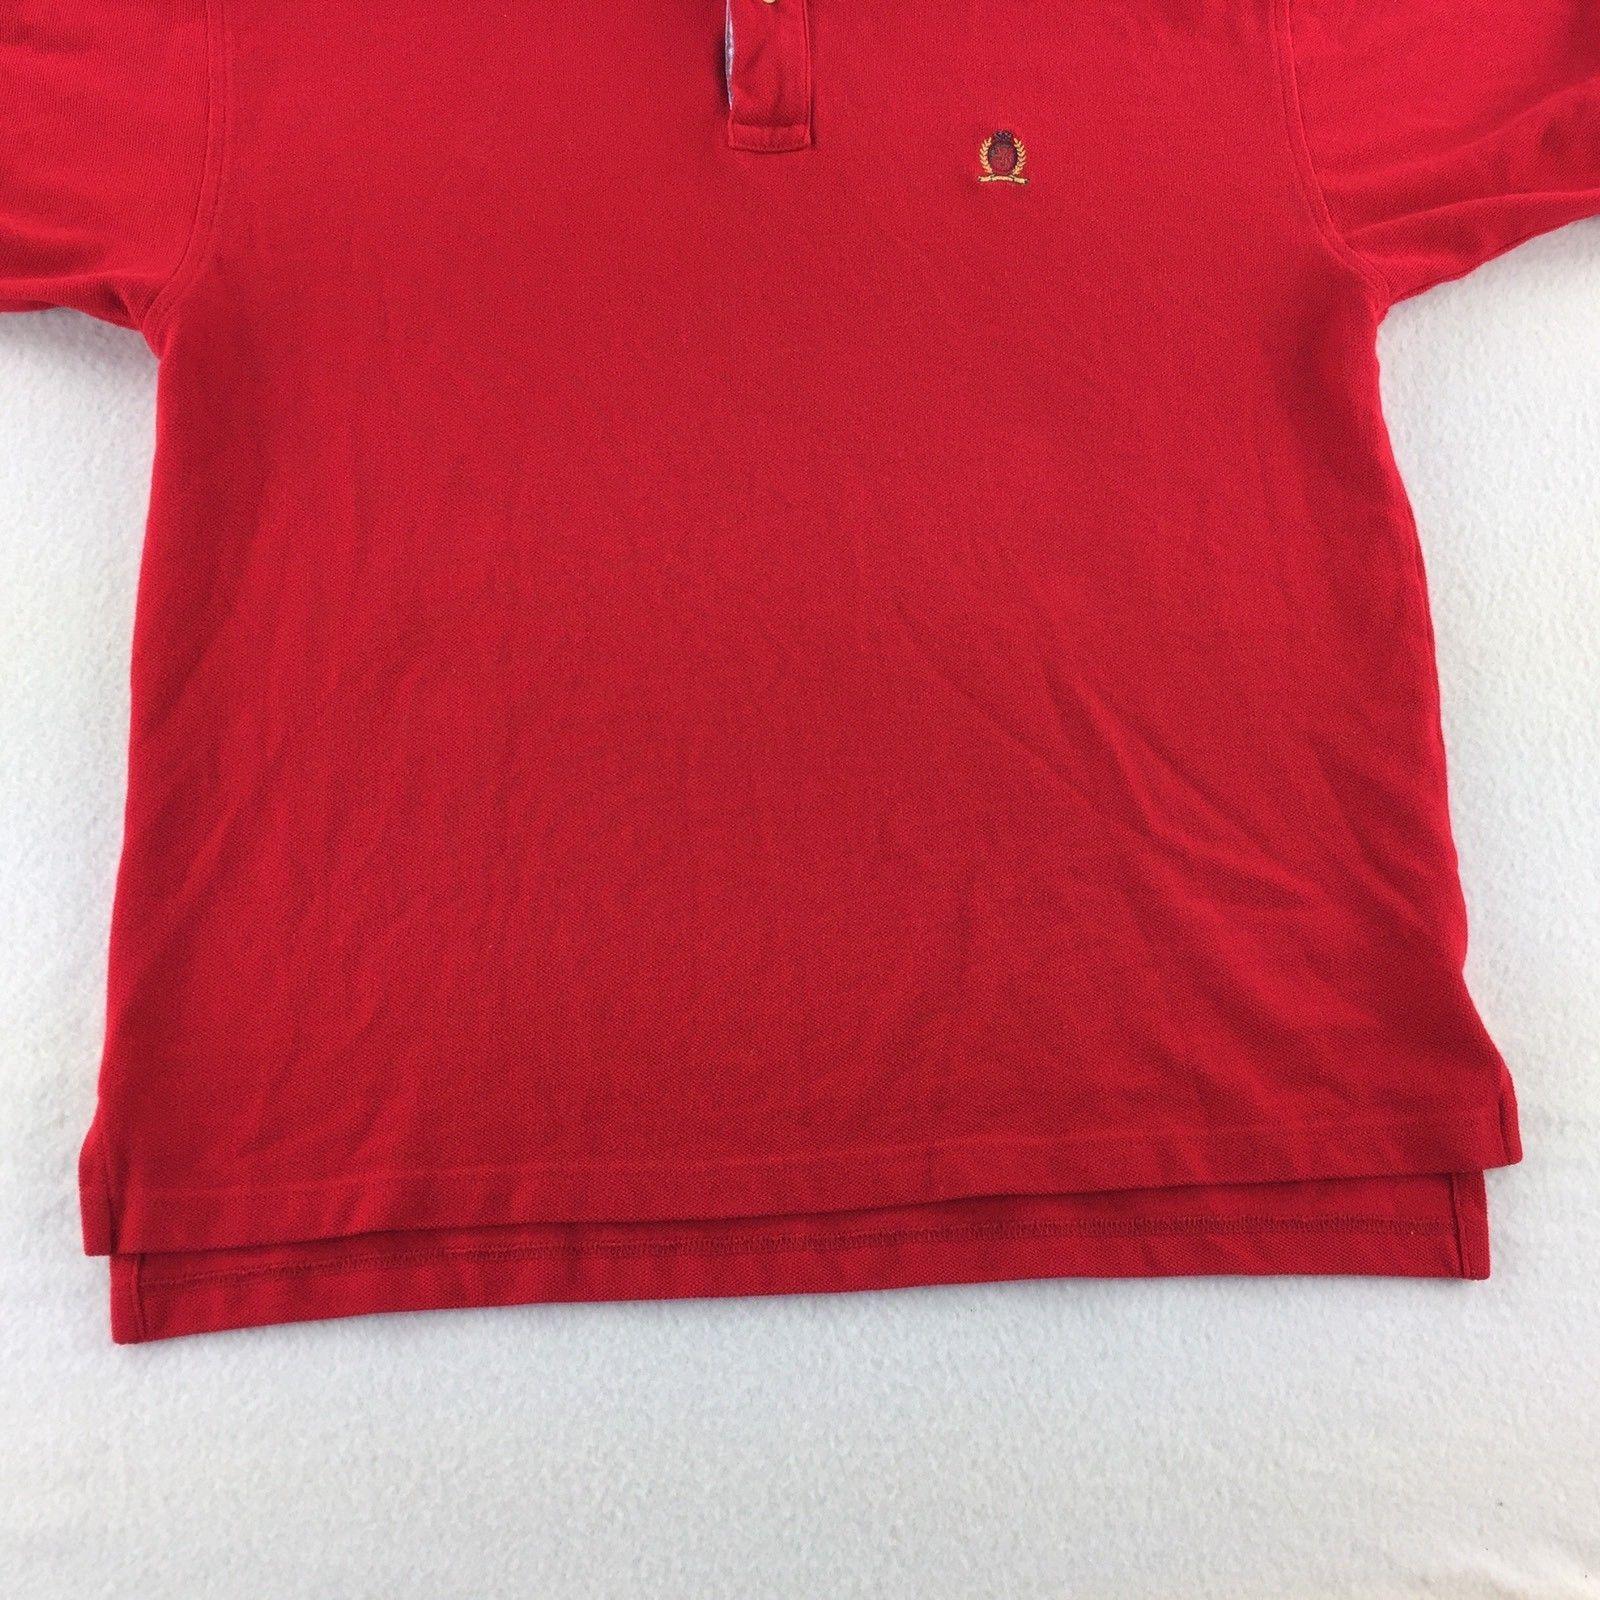 Tommy Hilfiger Lion Logo - Tommy Hilfiger Short Sleeve Lion Logo Shirt Men's Red Size M Medium ...